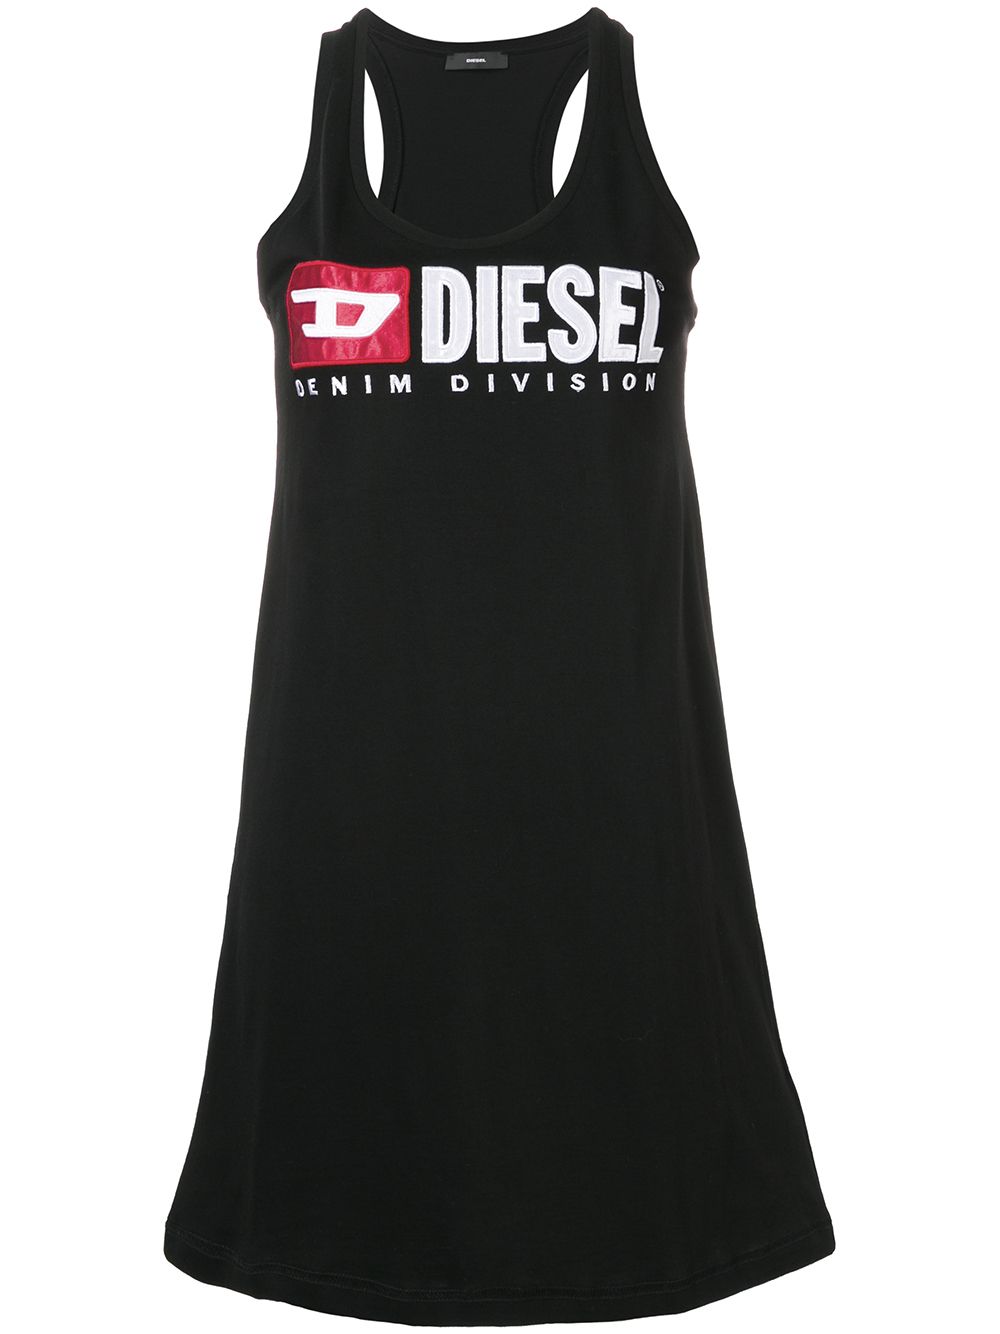 Diesel трикотажный топ с вышитым логотипом от Diesel